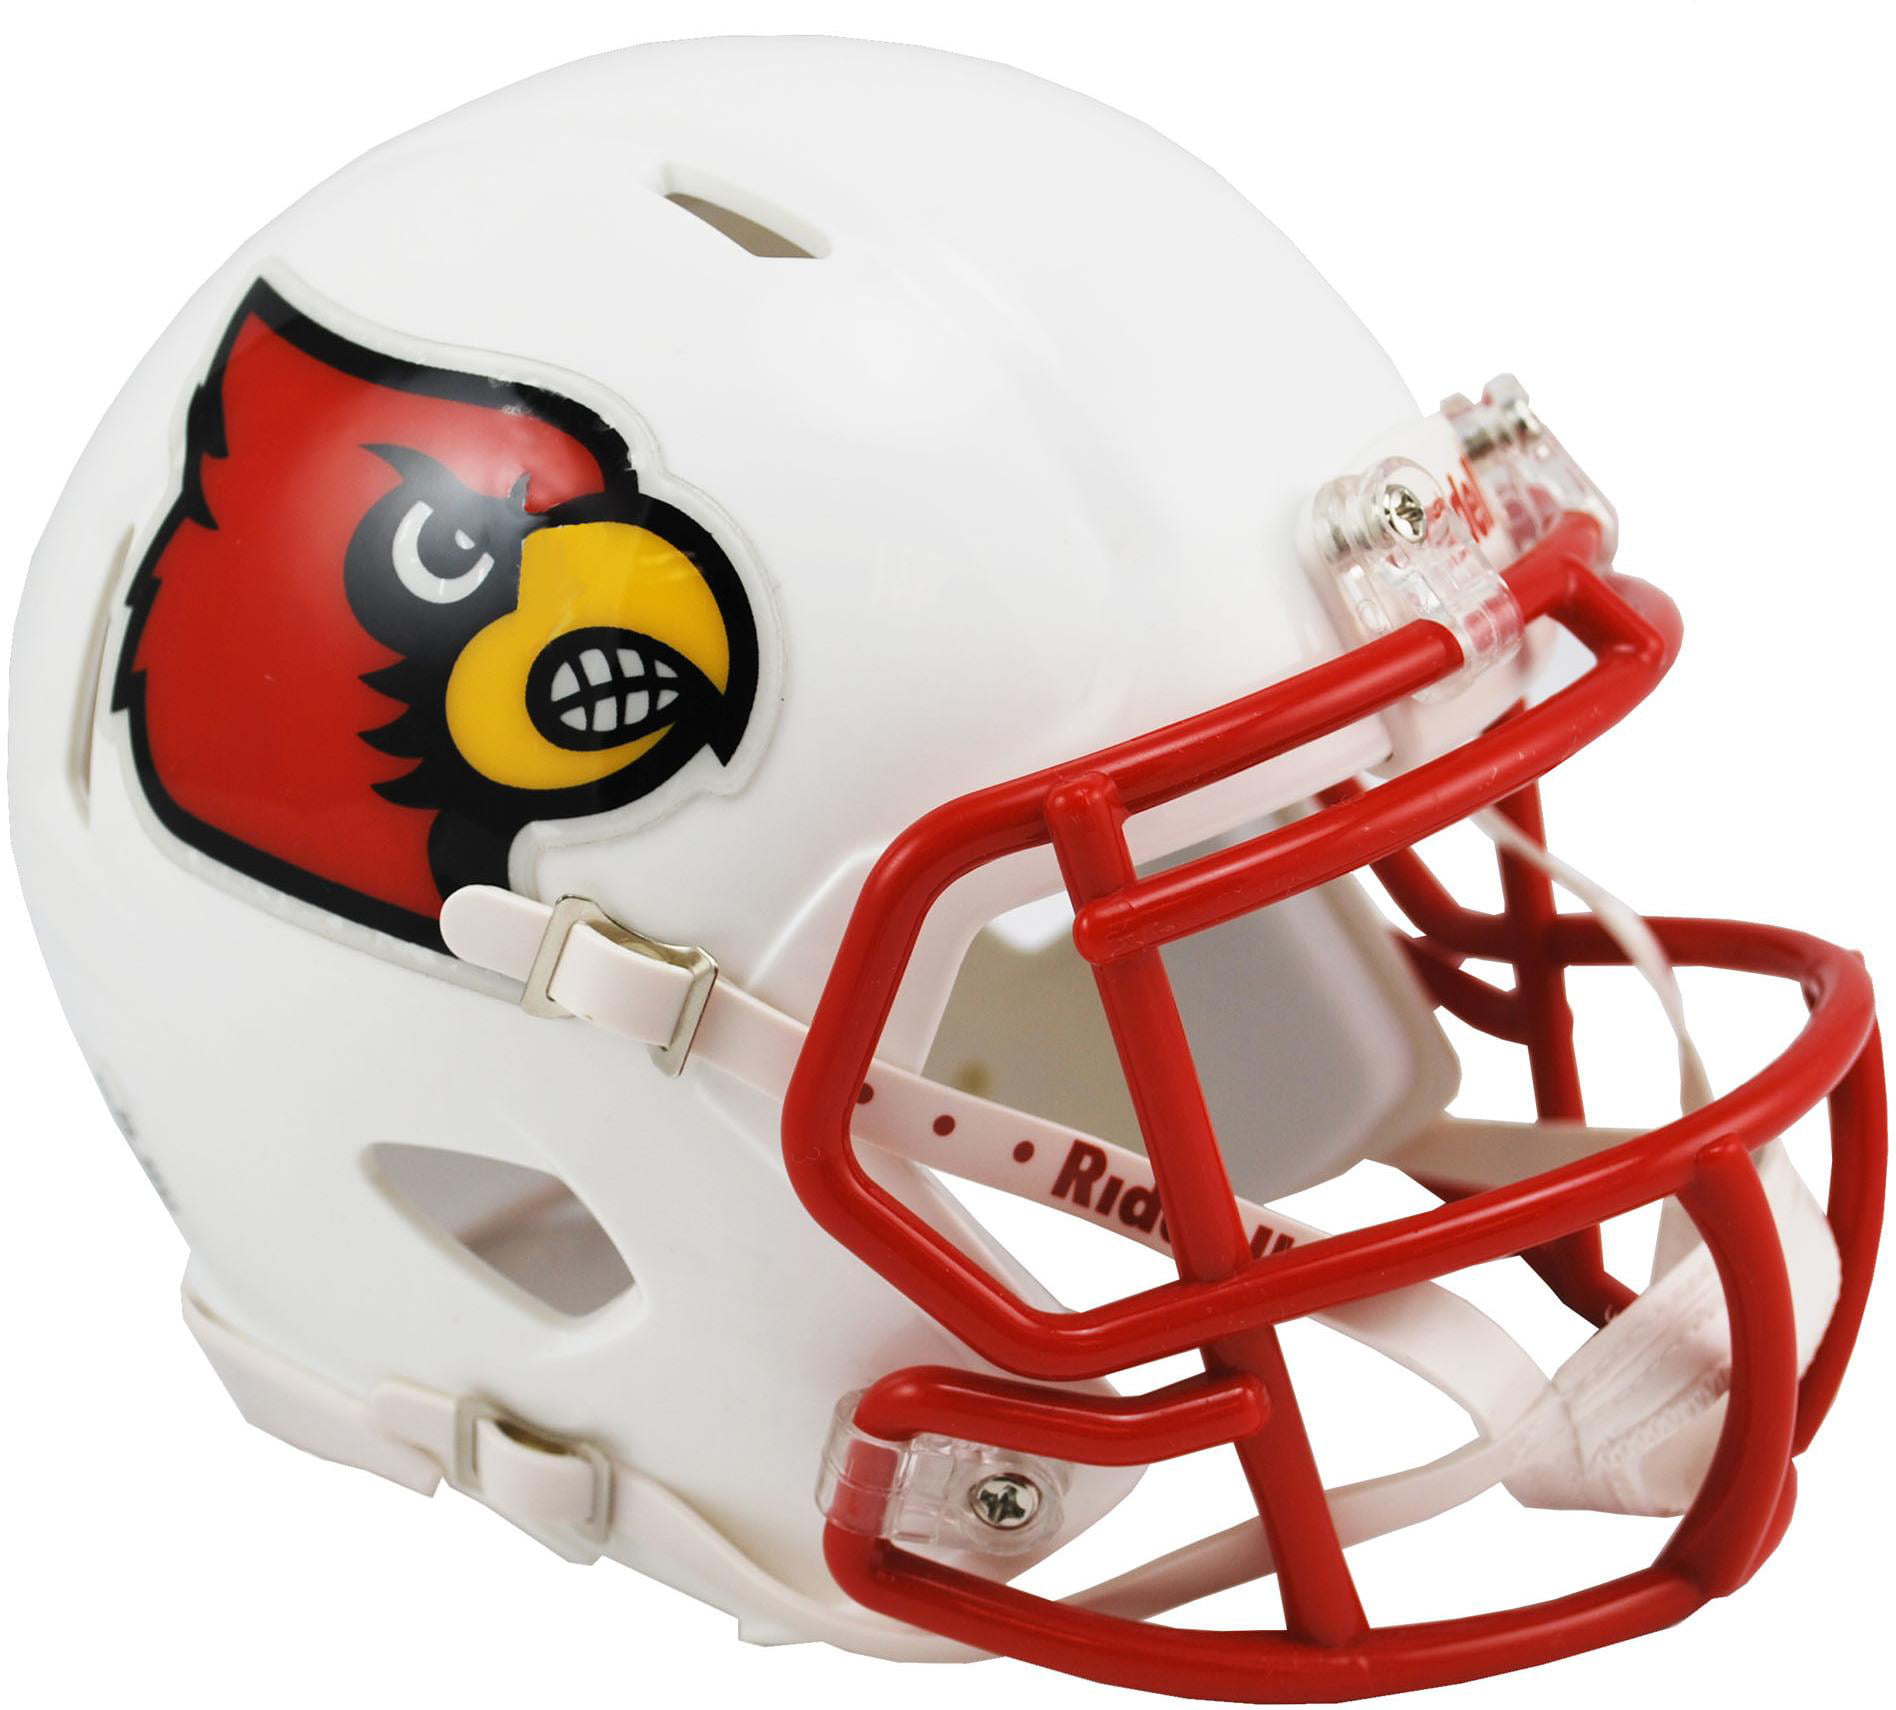 cardinals red helmet